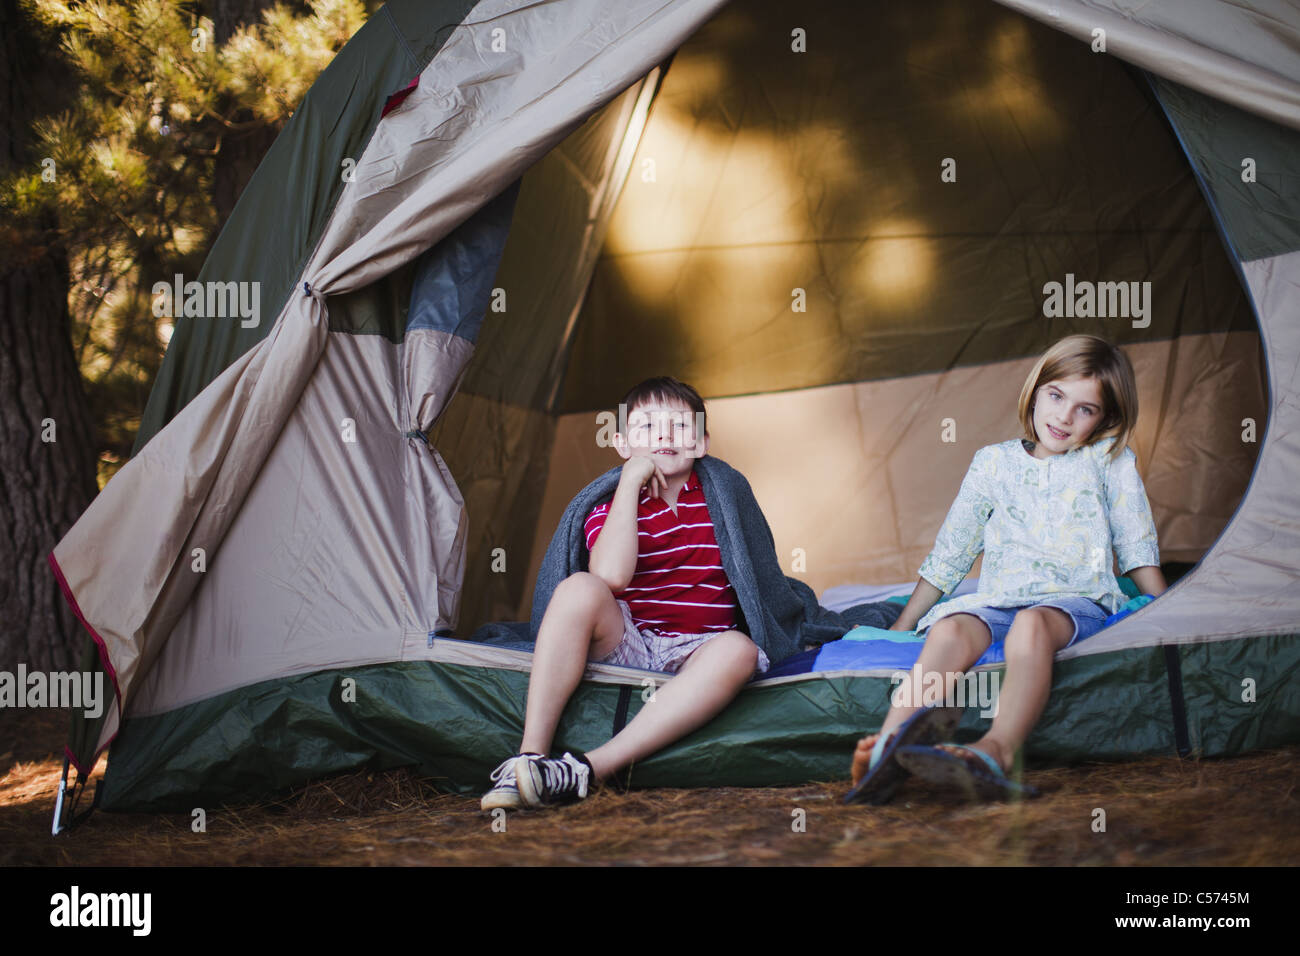 She is at camp. Девушка в палатке. Дети лежат в палатке. Палатки для девочек. Ребенок сидит в палатке дома.